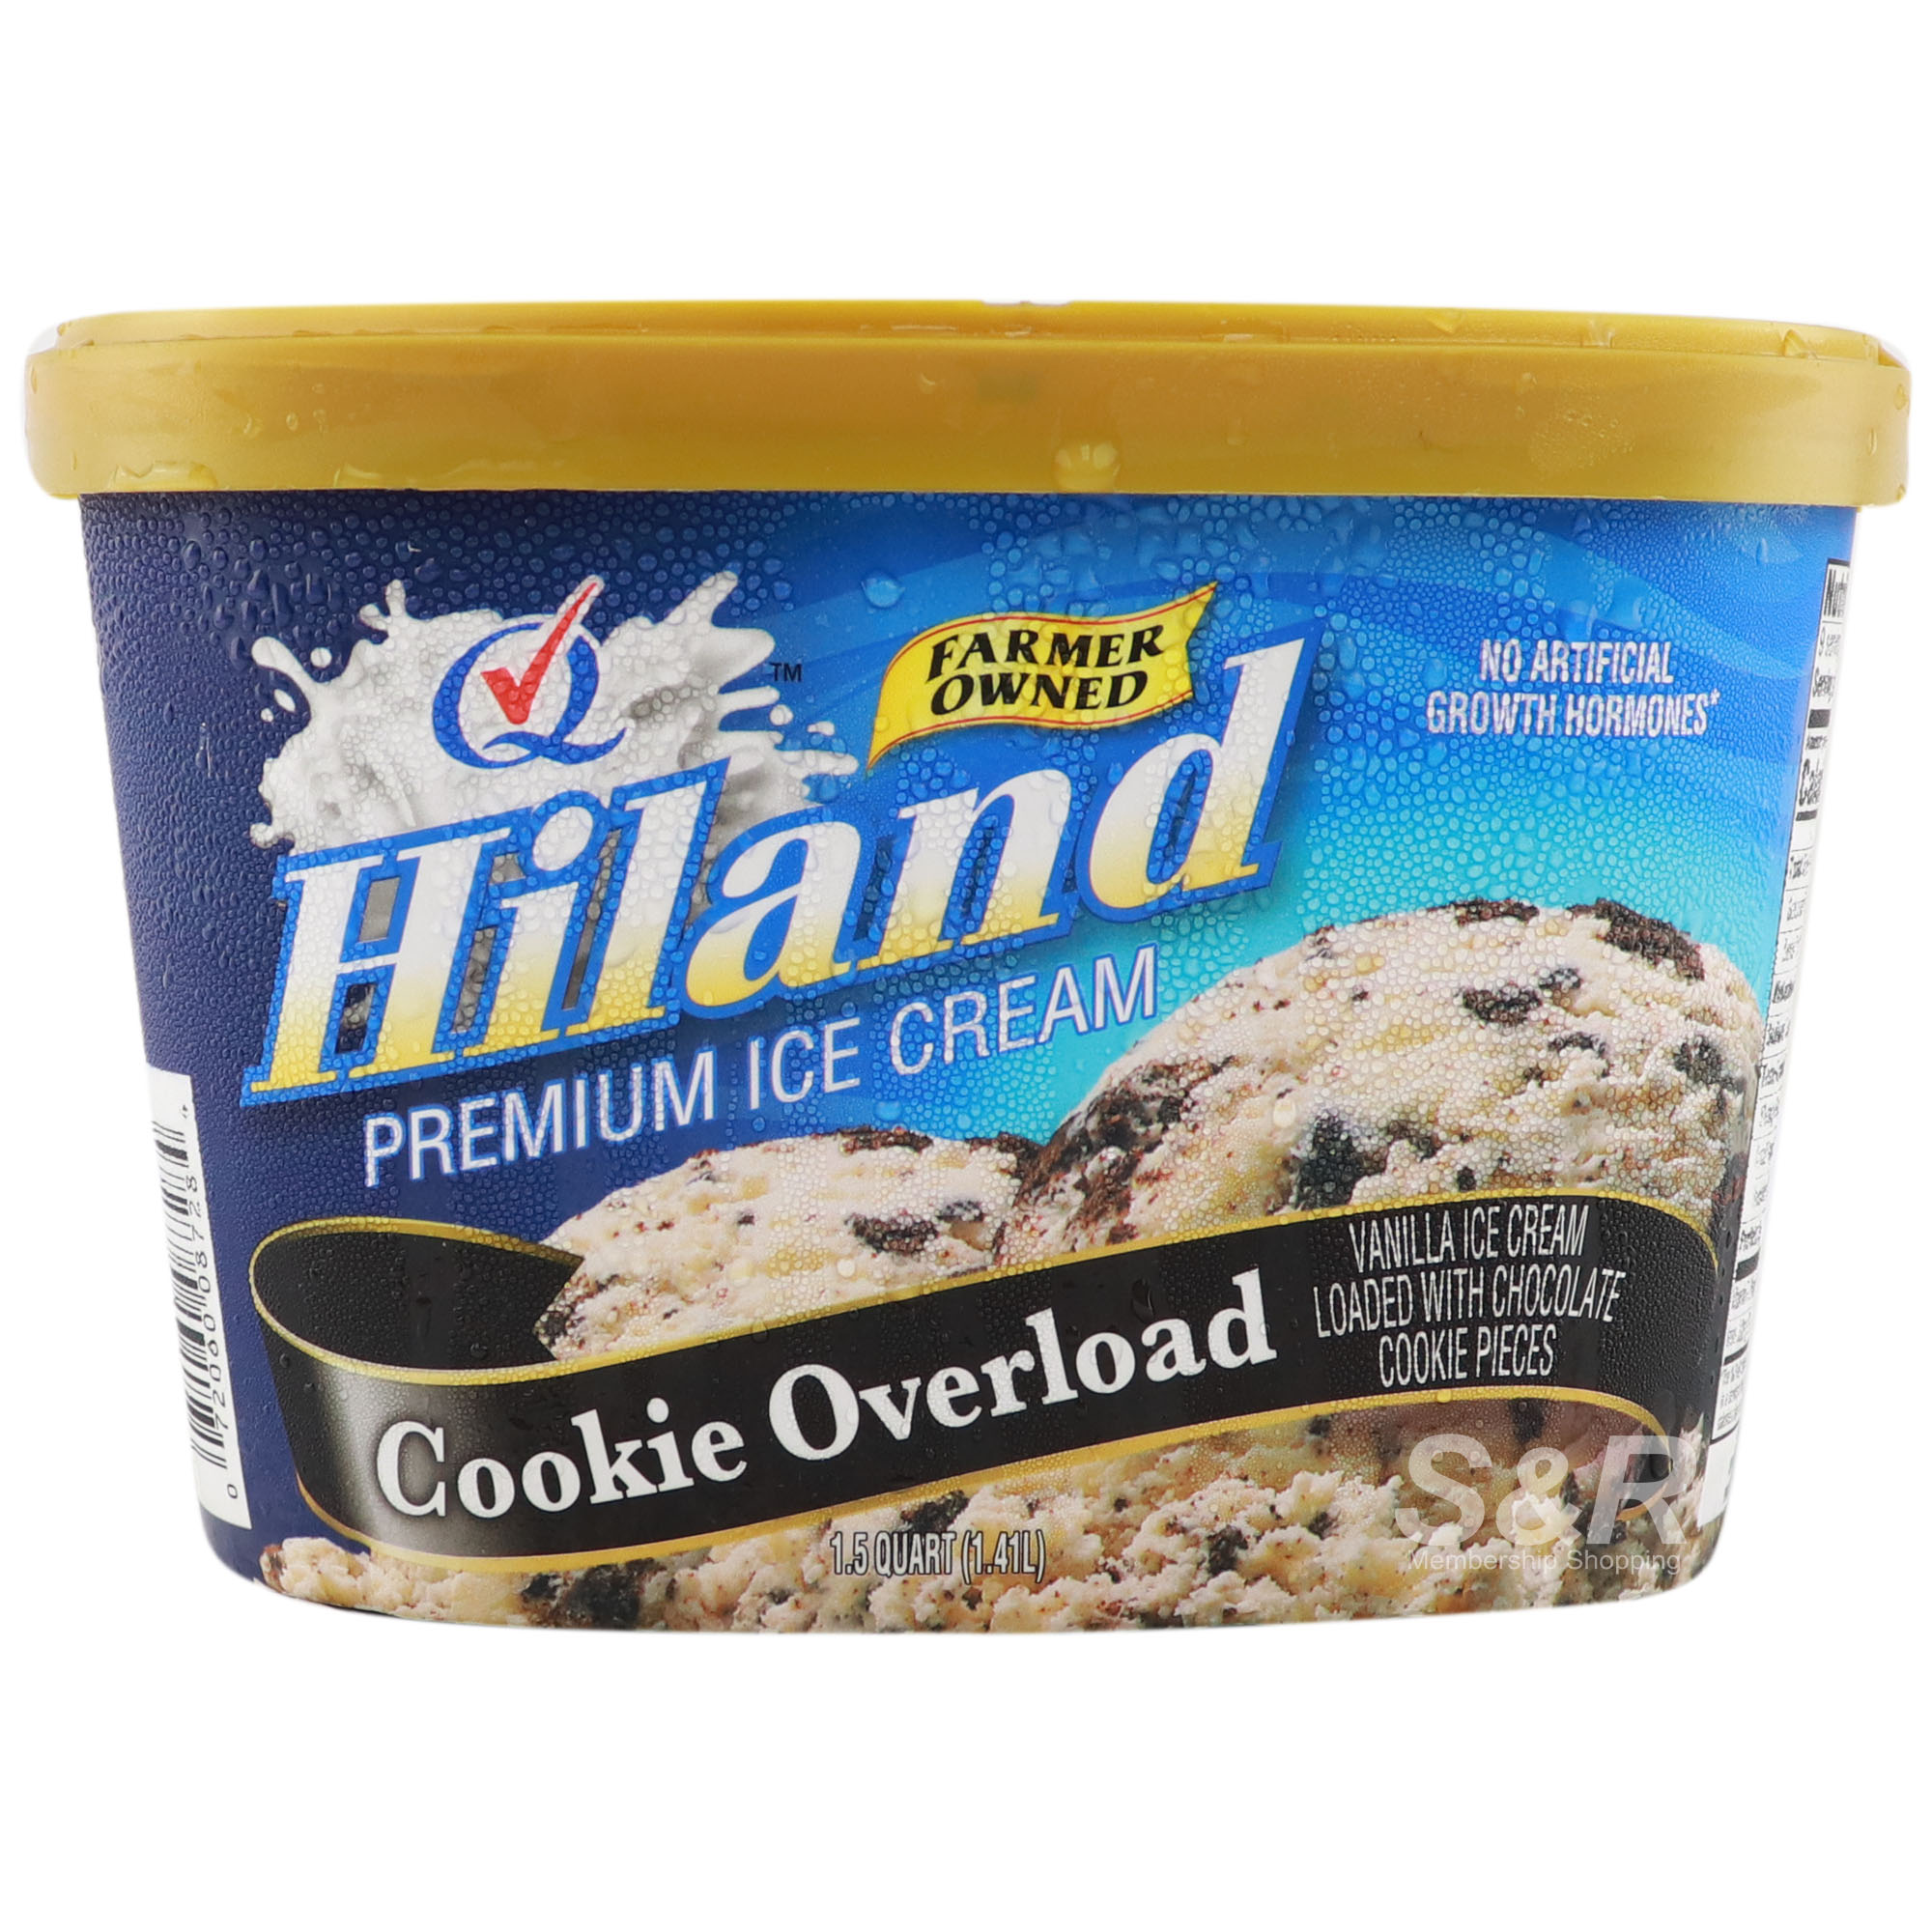 Hiland Premium Ice Cream Cookie Overload 1.41L